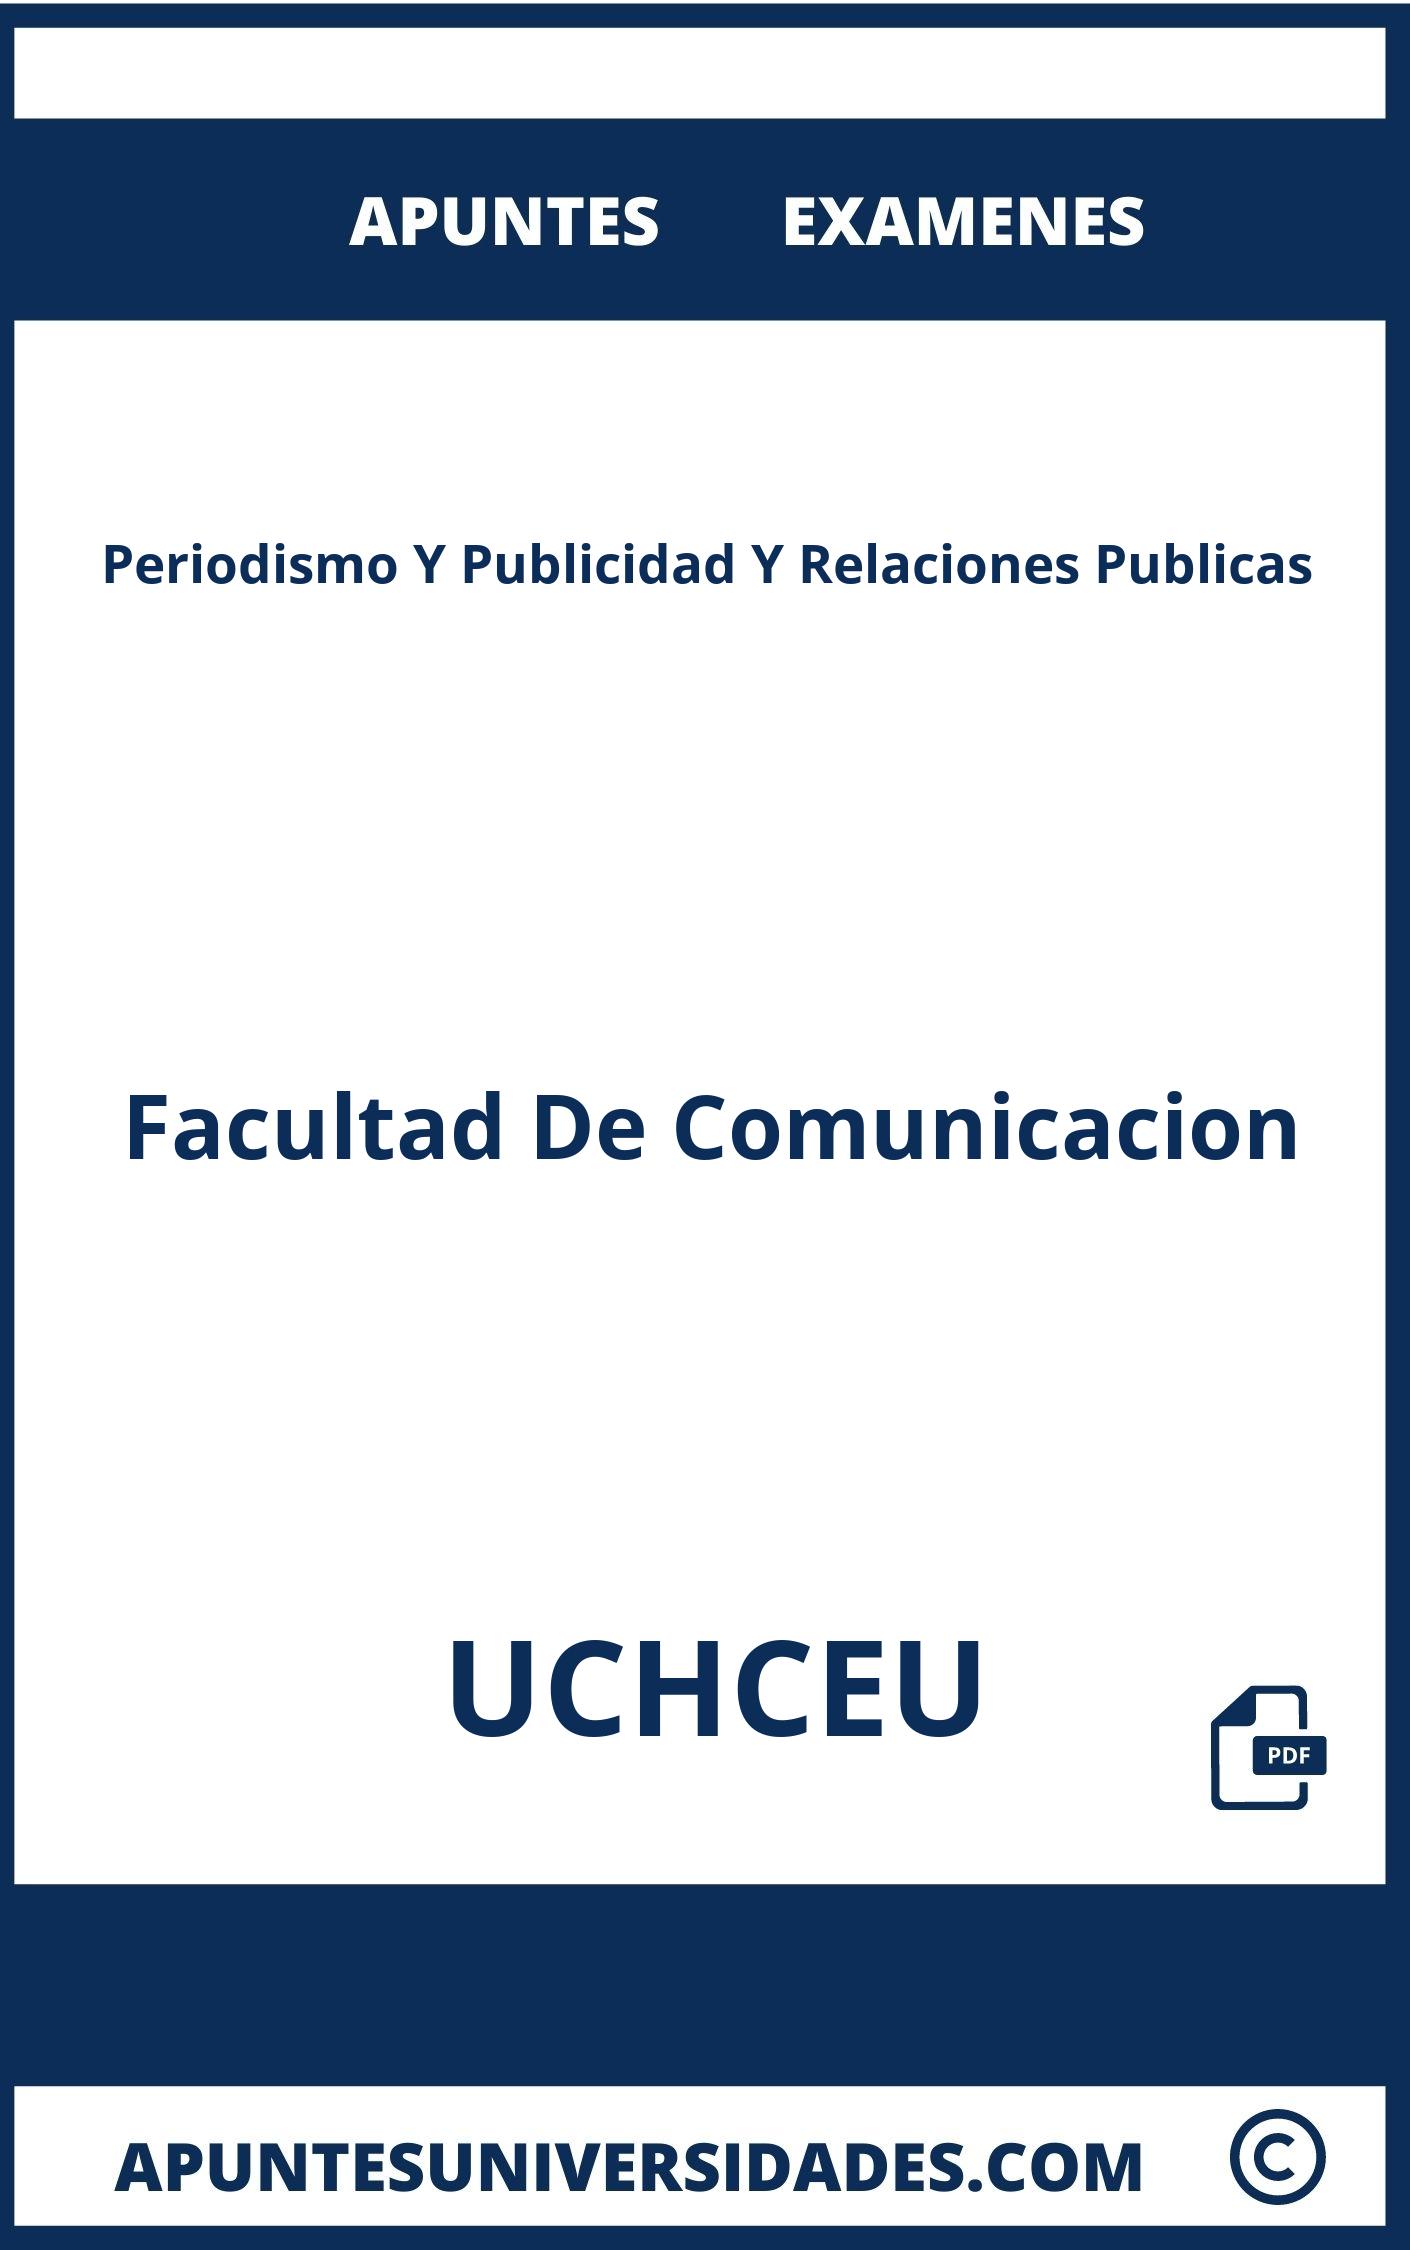 Examenes y Apuntes Periodismo Y Publicidad Y Relaciones Publicas UCHCEU